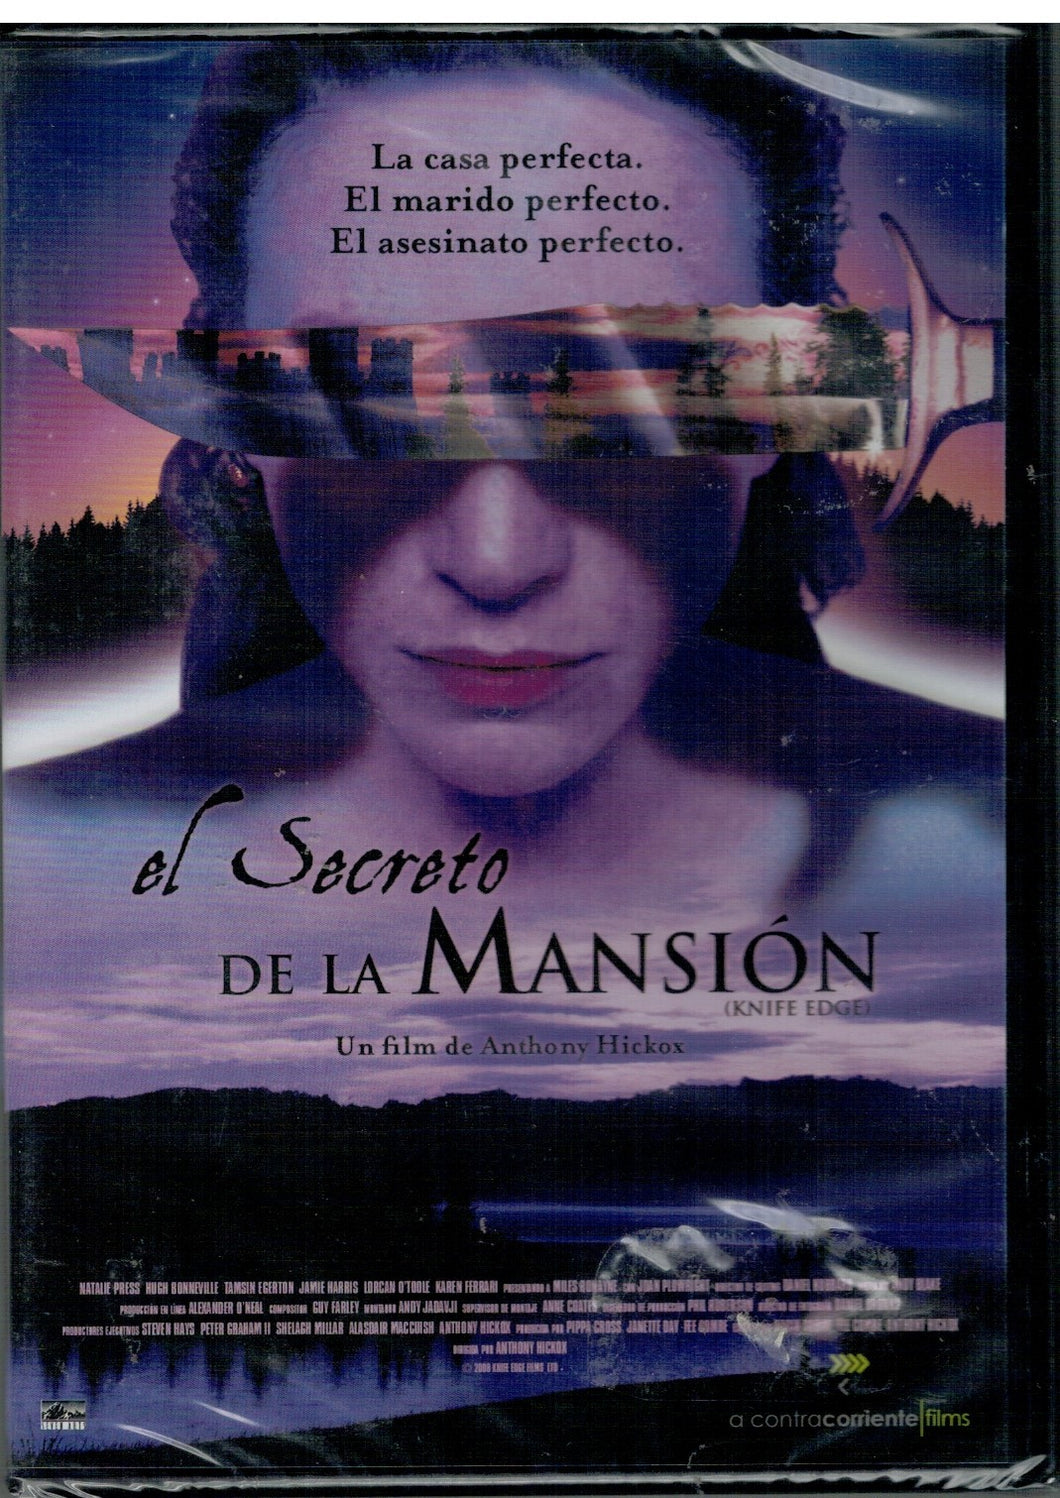 El secreto de la mansión (Knife Edge) (DVD Nuevo)